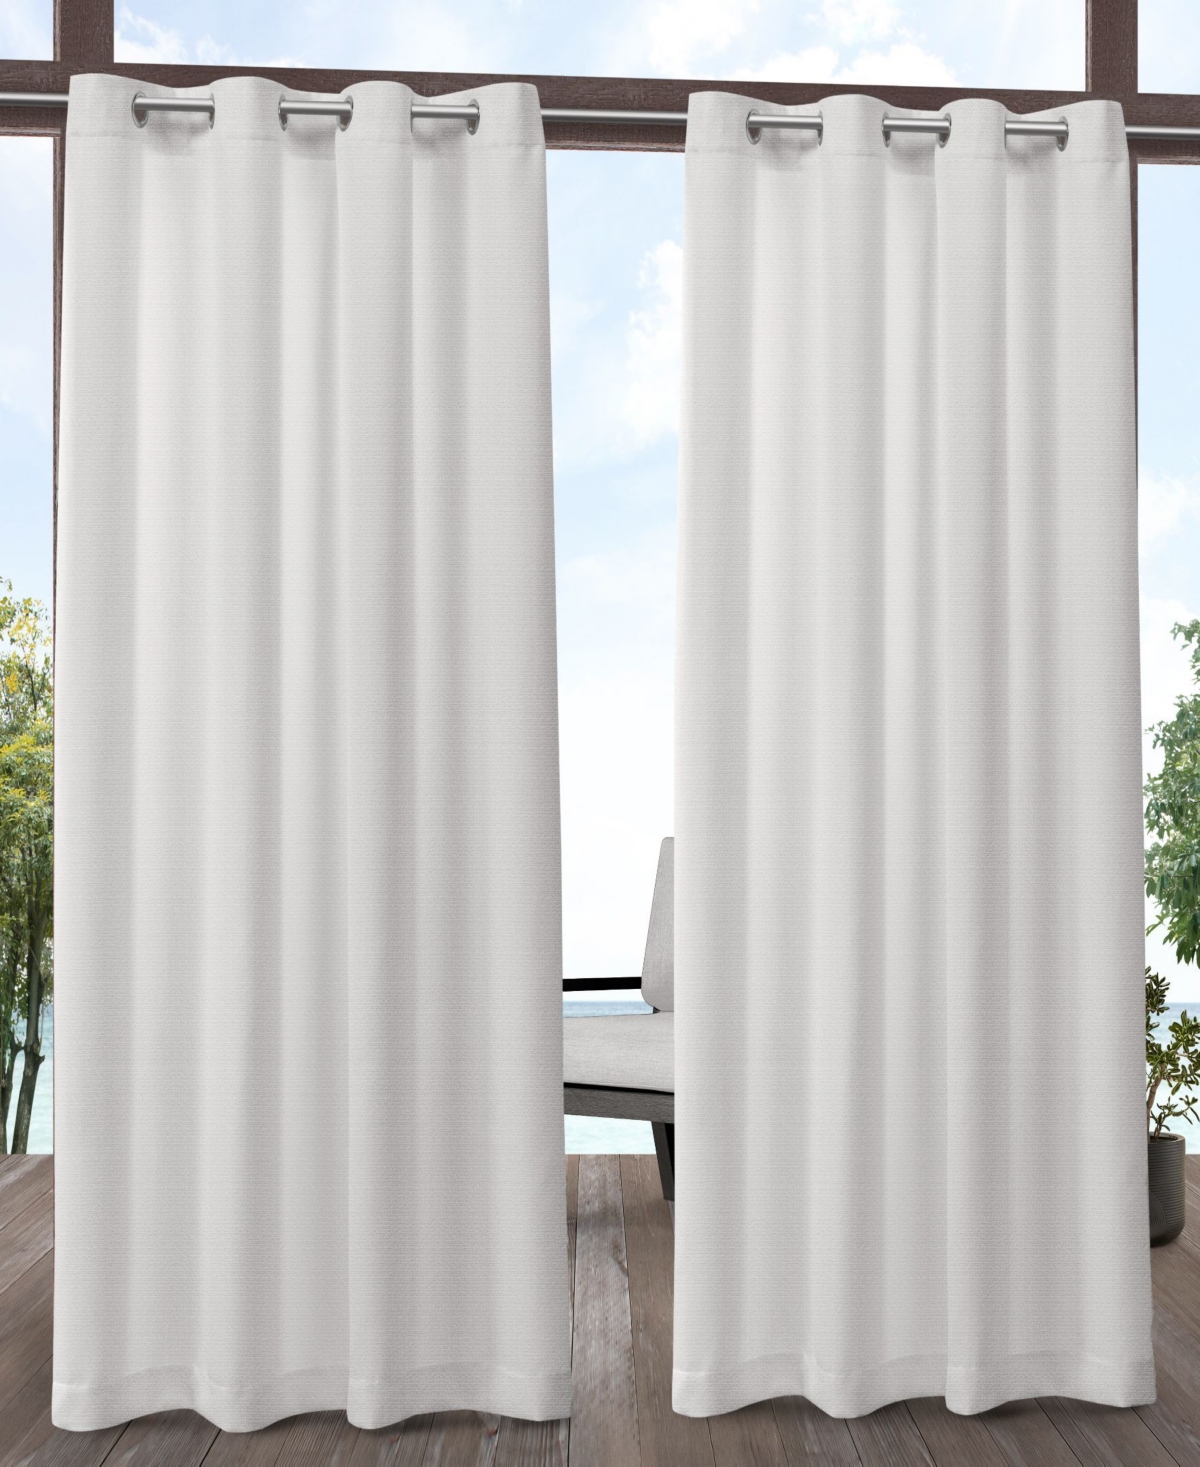 Aztec Indoor/Outdoor Grommet Top Curtain Panel Pair, 54 x 120" - White